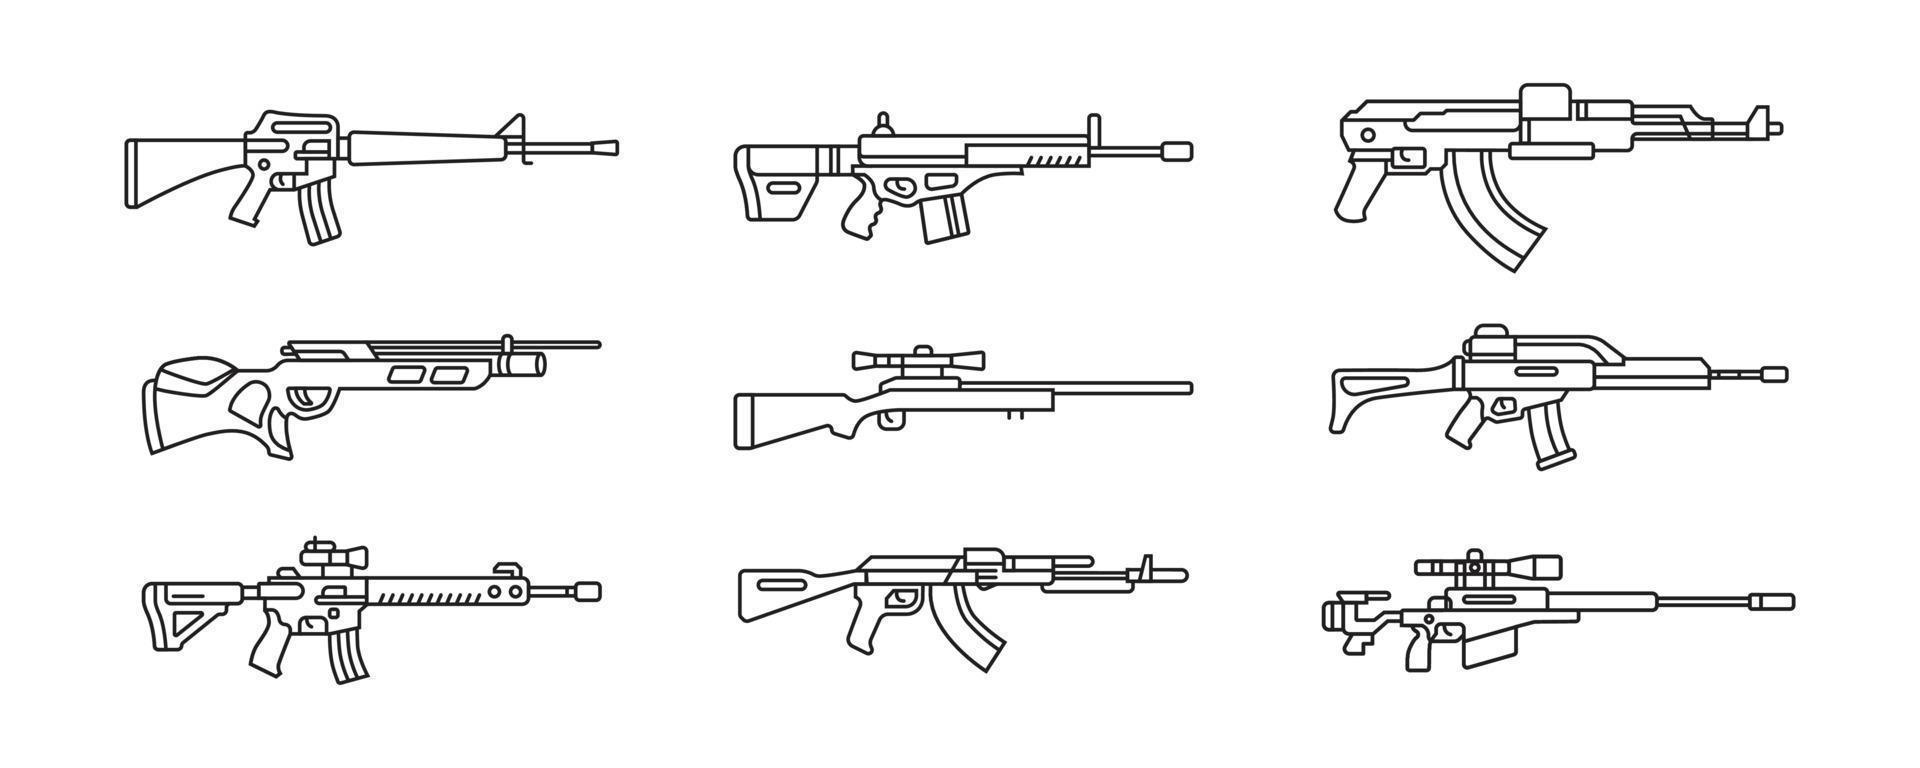 una colección de ilustraciones de armas de fuego de cañón largo. conjunto de armas militares en diseño vectorial vector